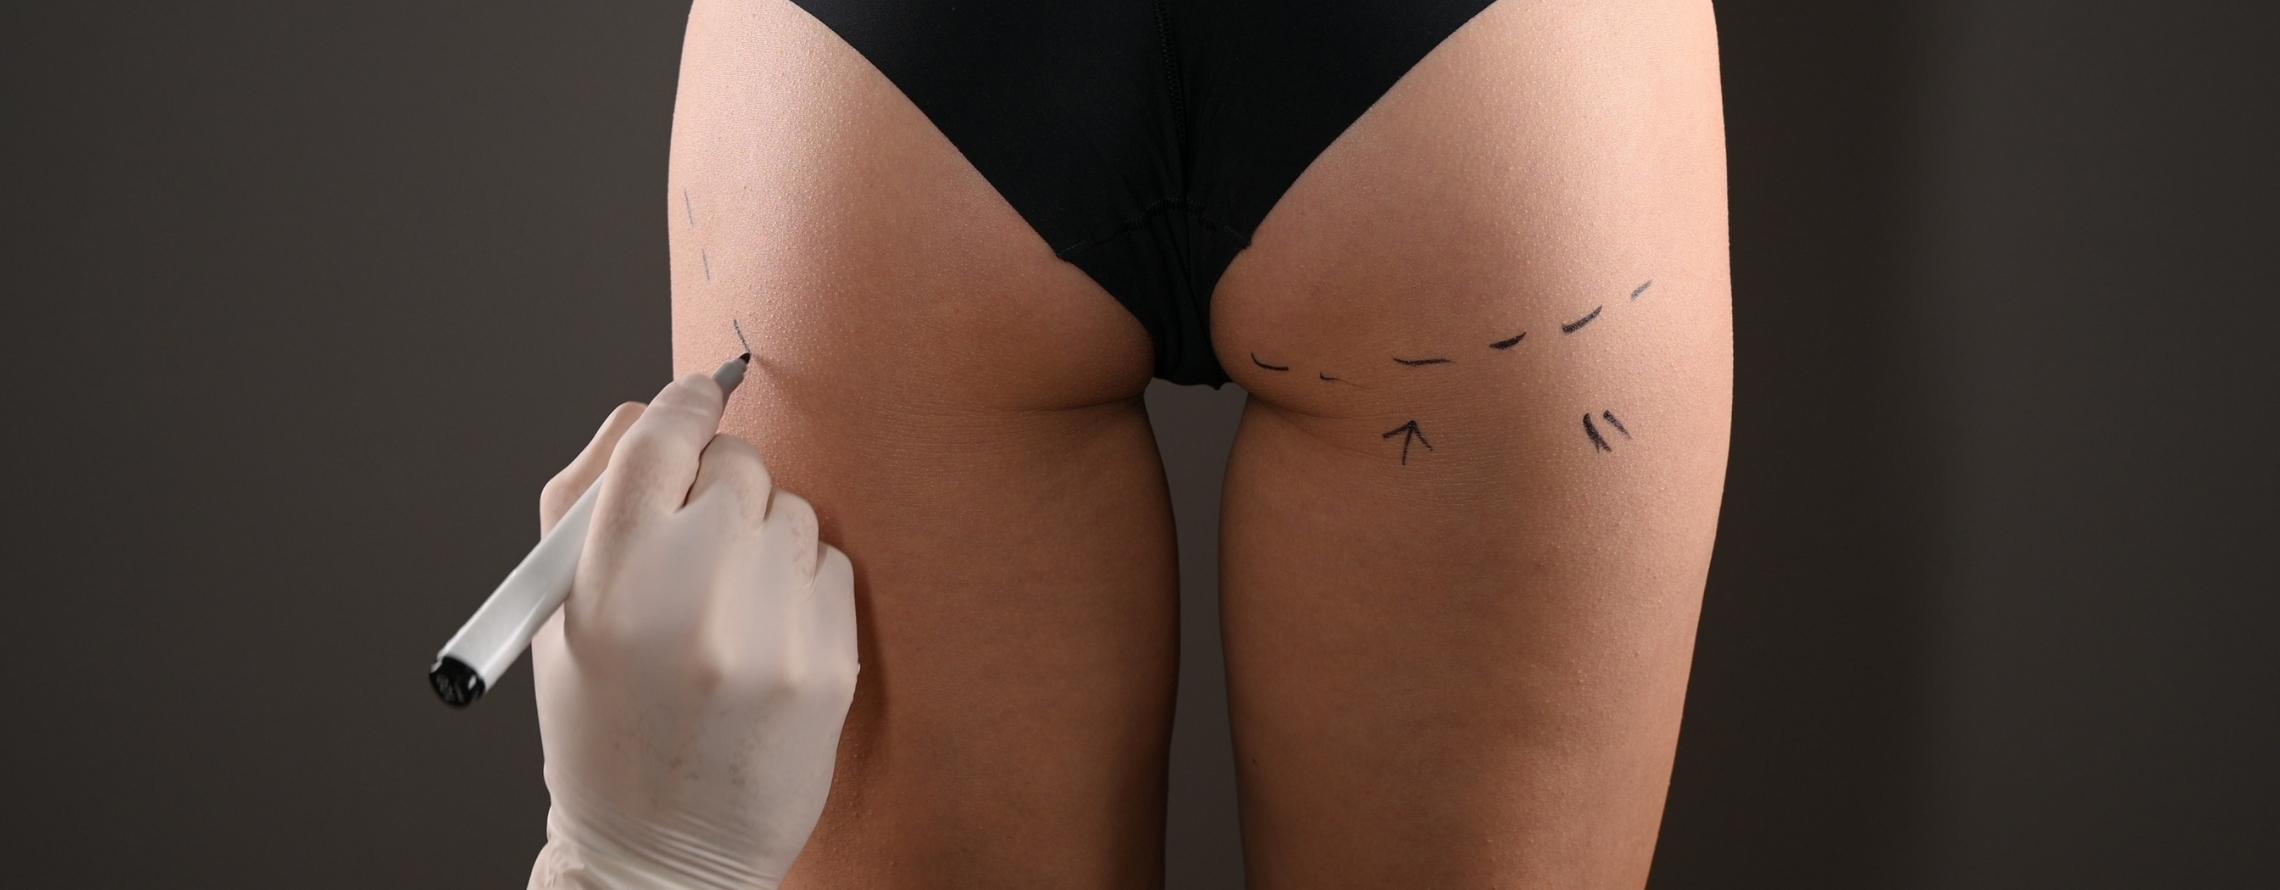 Brazilian Butt Lift Surgery